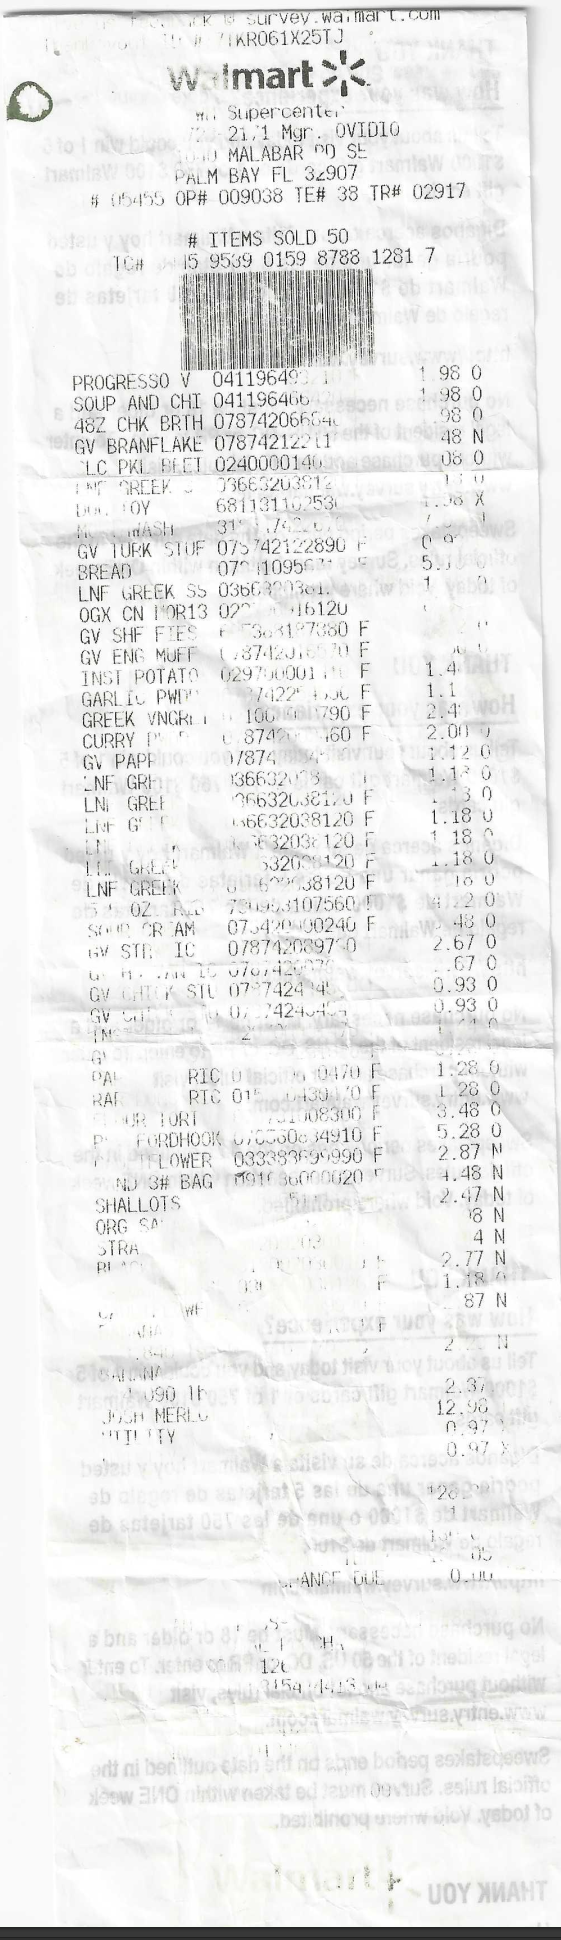 Typical Walmart Malabar illegible receipt